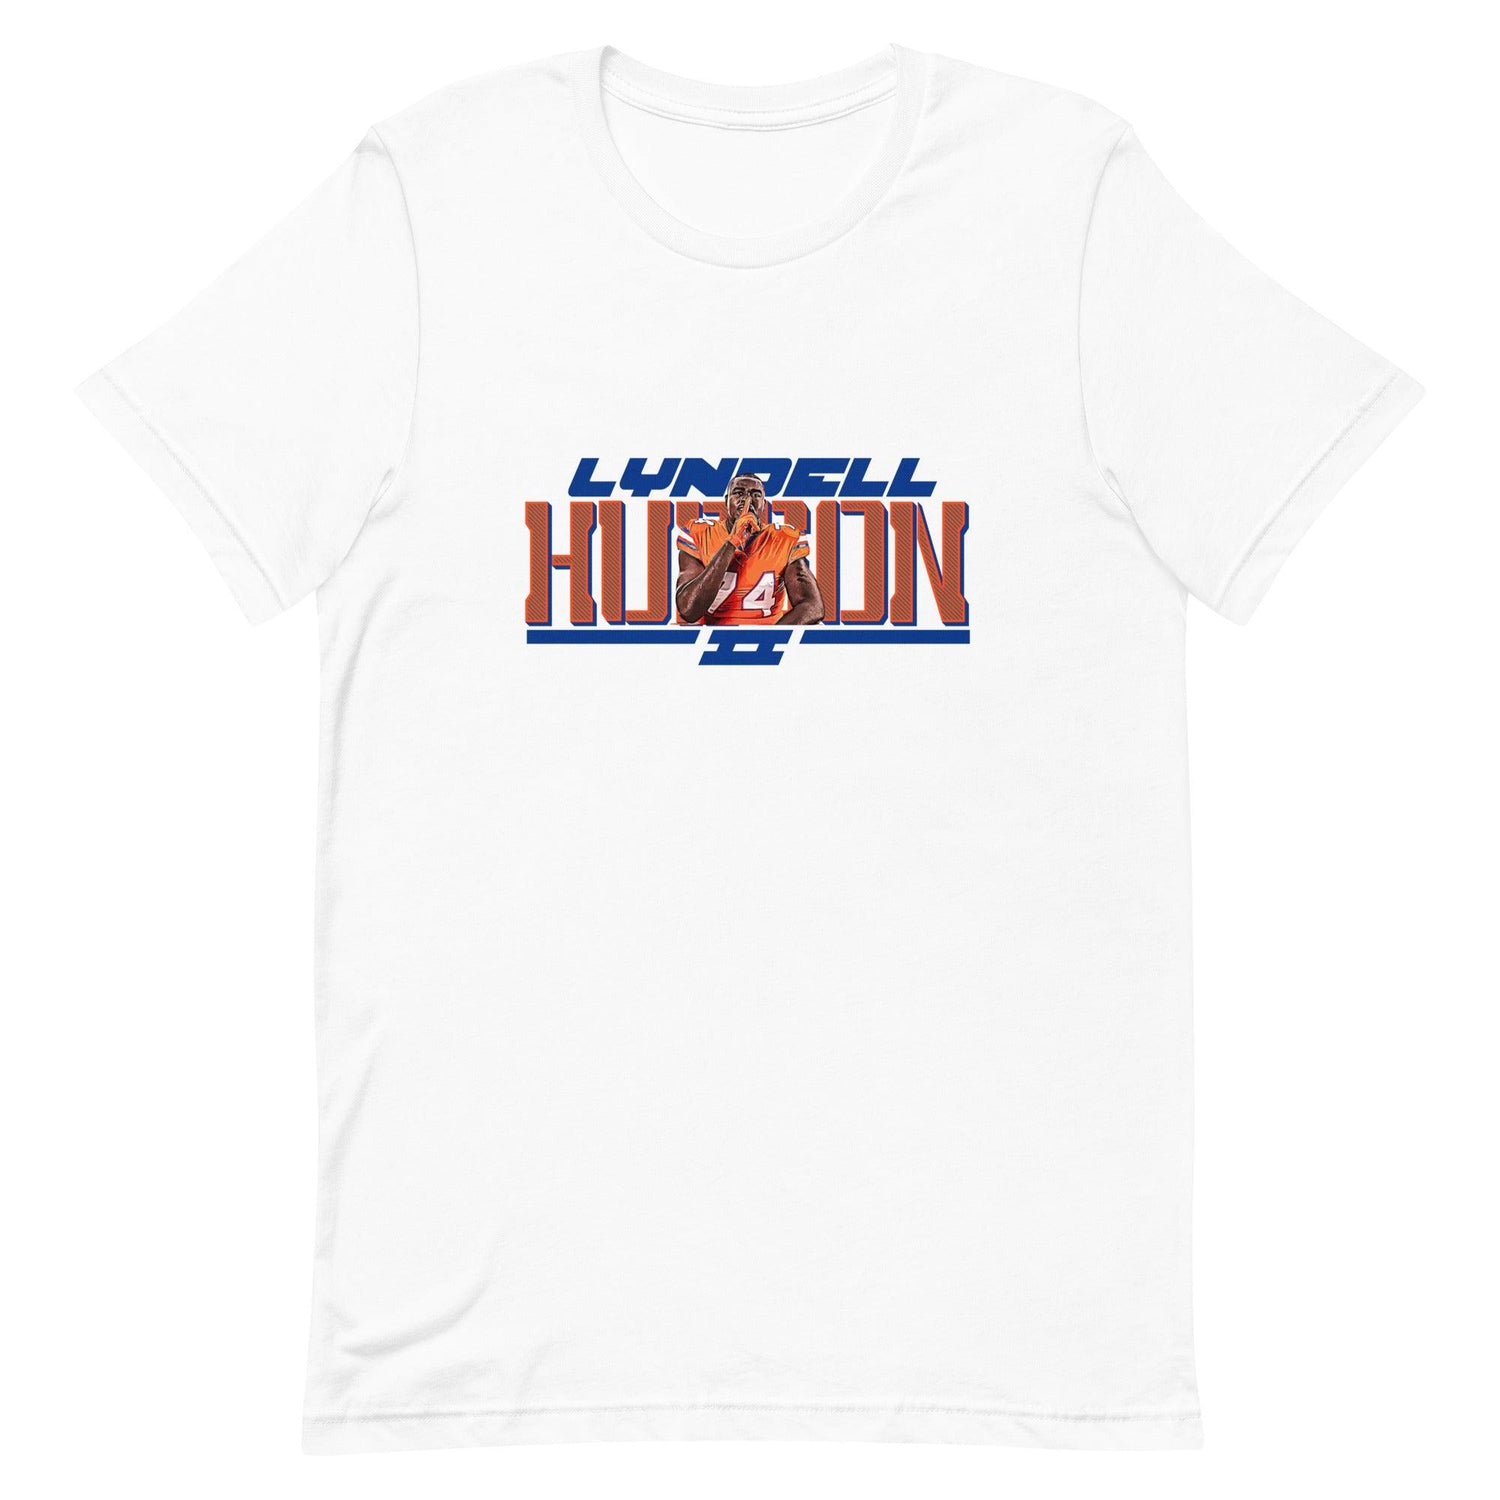 Lyndell Hudson II "Gameday" t-shirt - Fan Arch